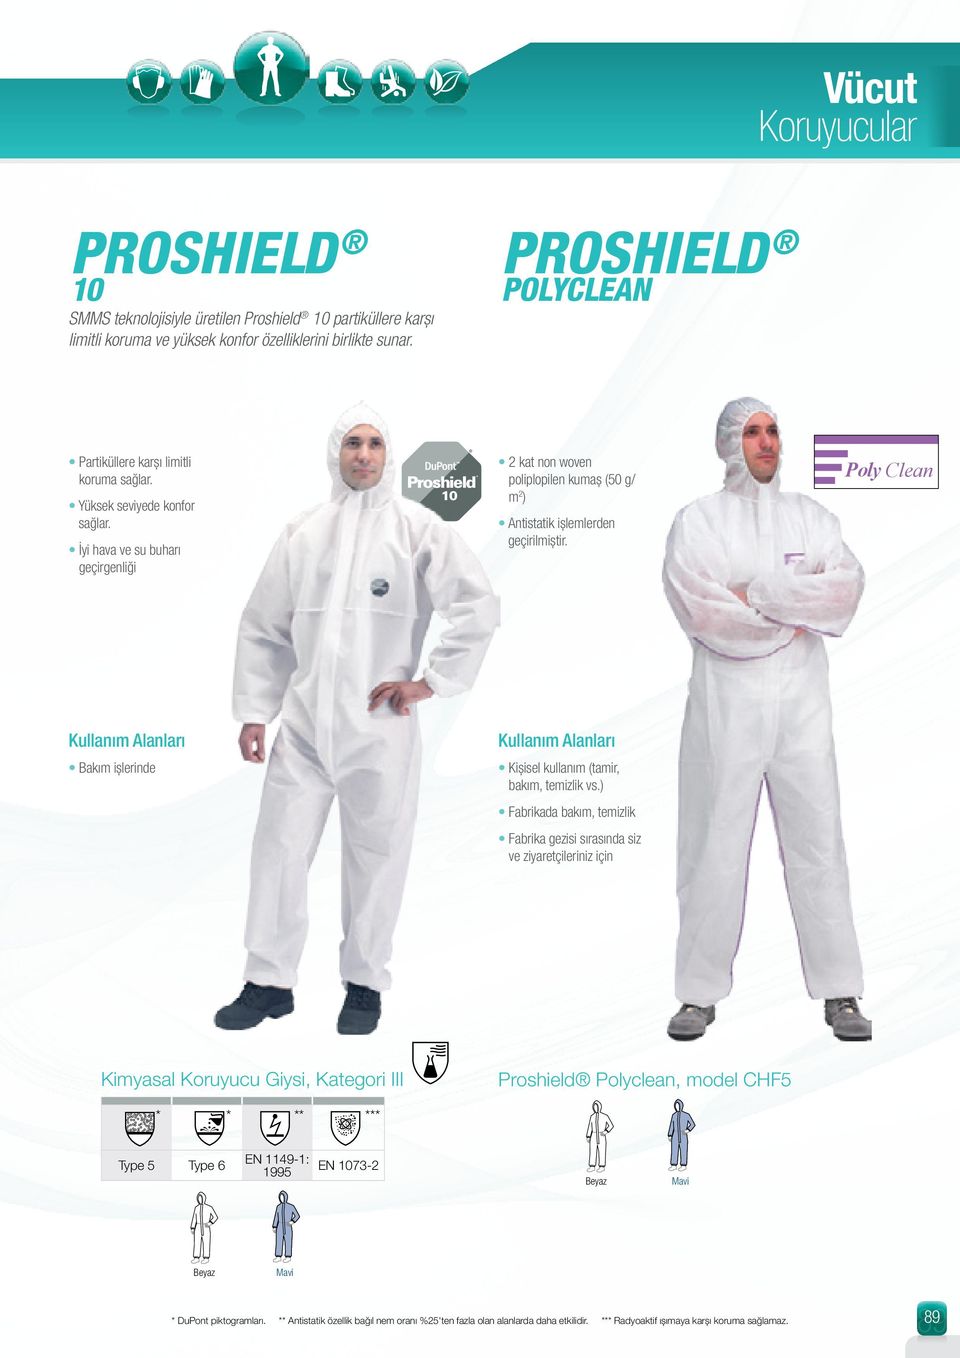 İyi hava ve su buharı geçirgenliği Proshield 10 2 kat non woven poliplopilen kumaş (50 g/ m 2 ) Antistatik işlemlerden geçirilmiştir.